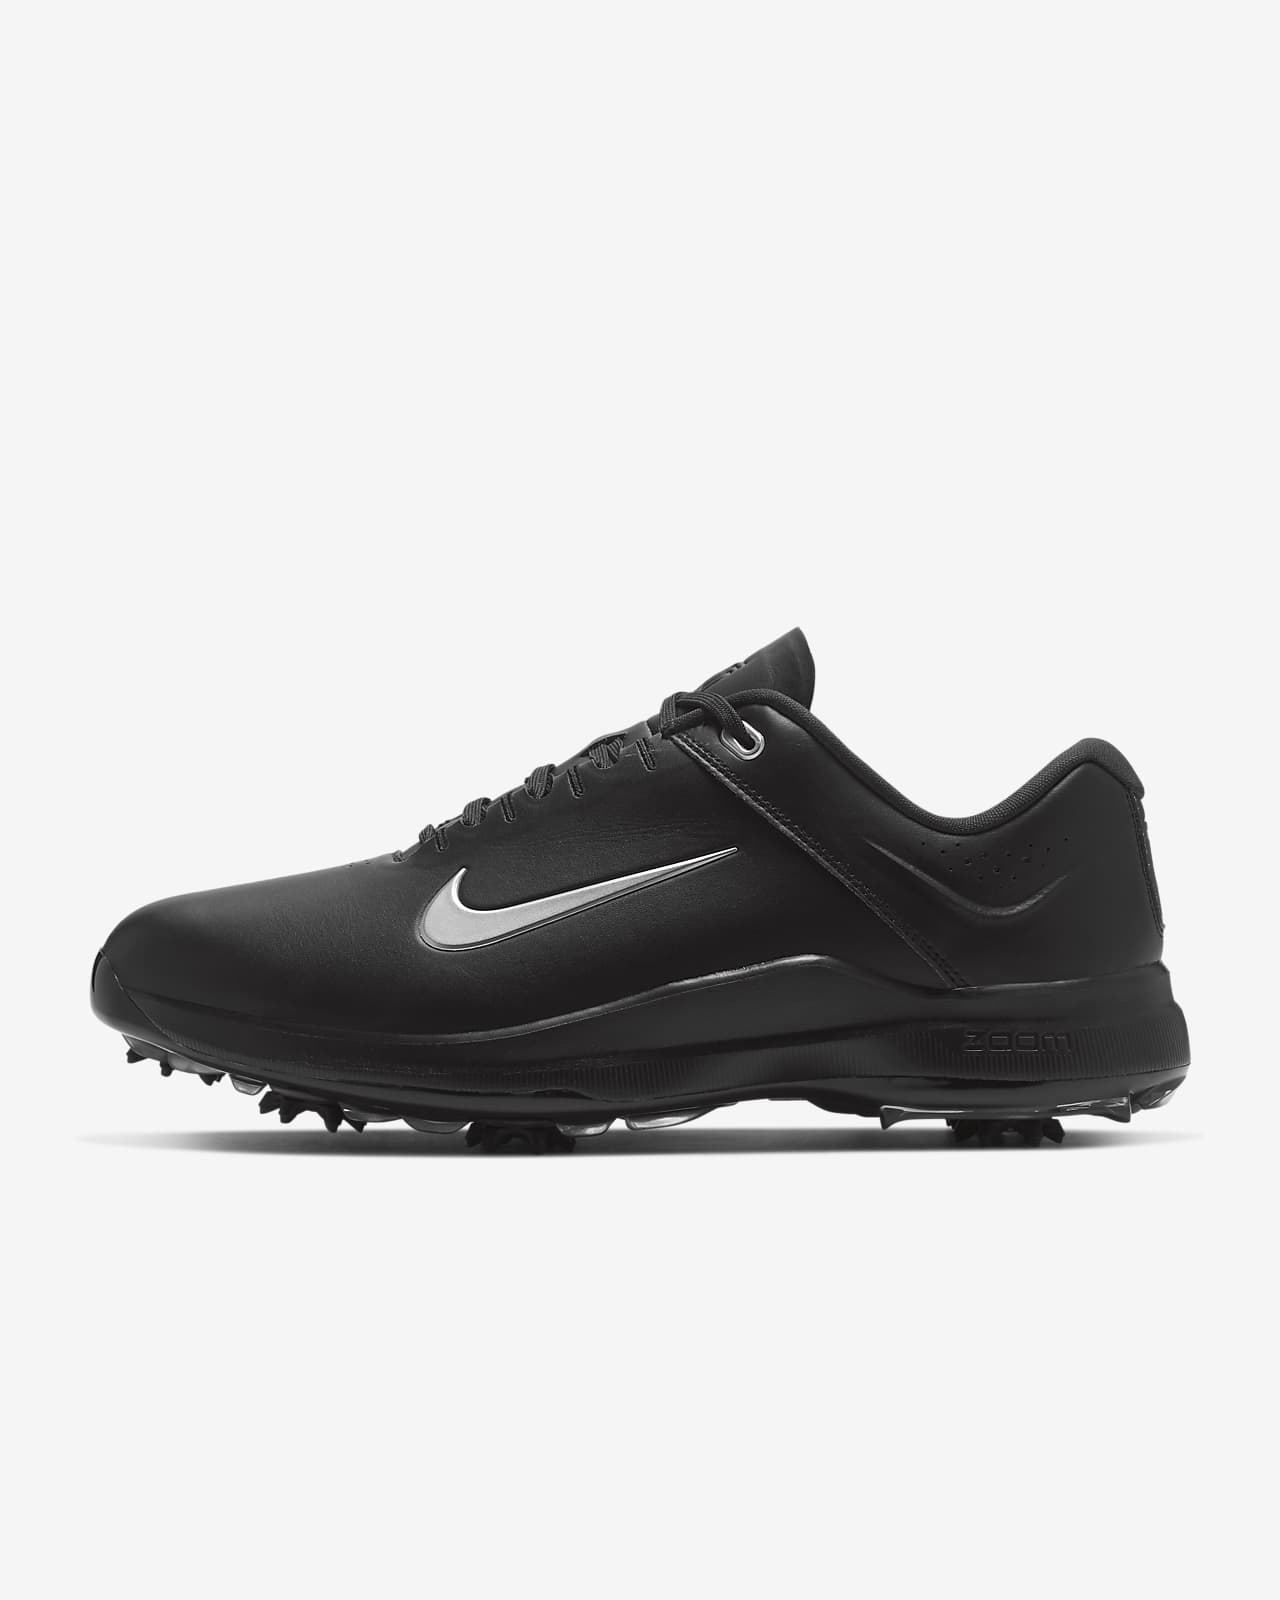 Tiger Woods '20 Men's Golf Shoes (Wide). Nike.com